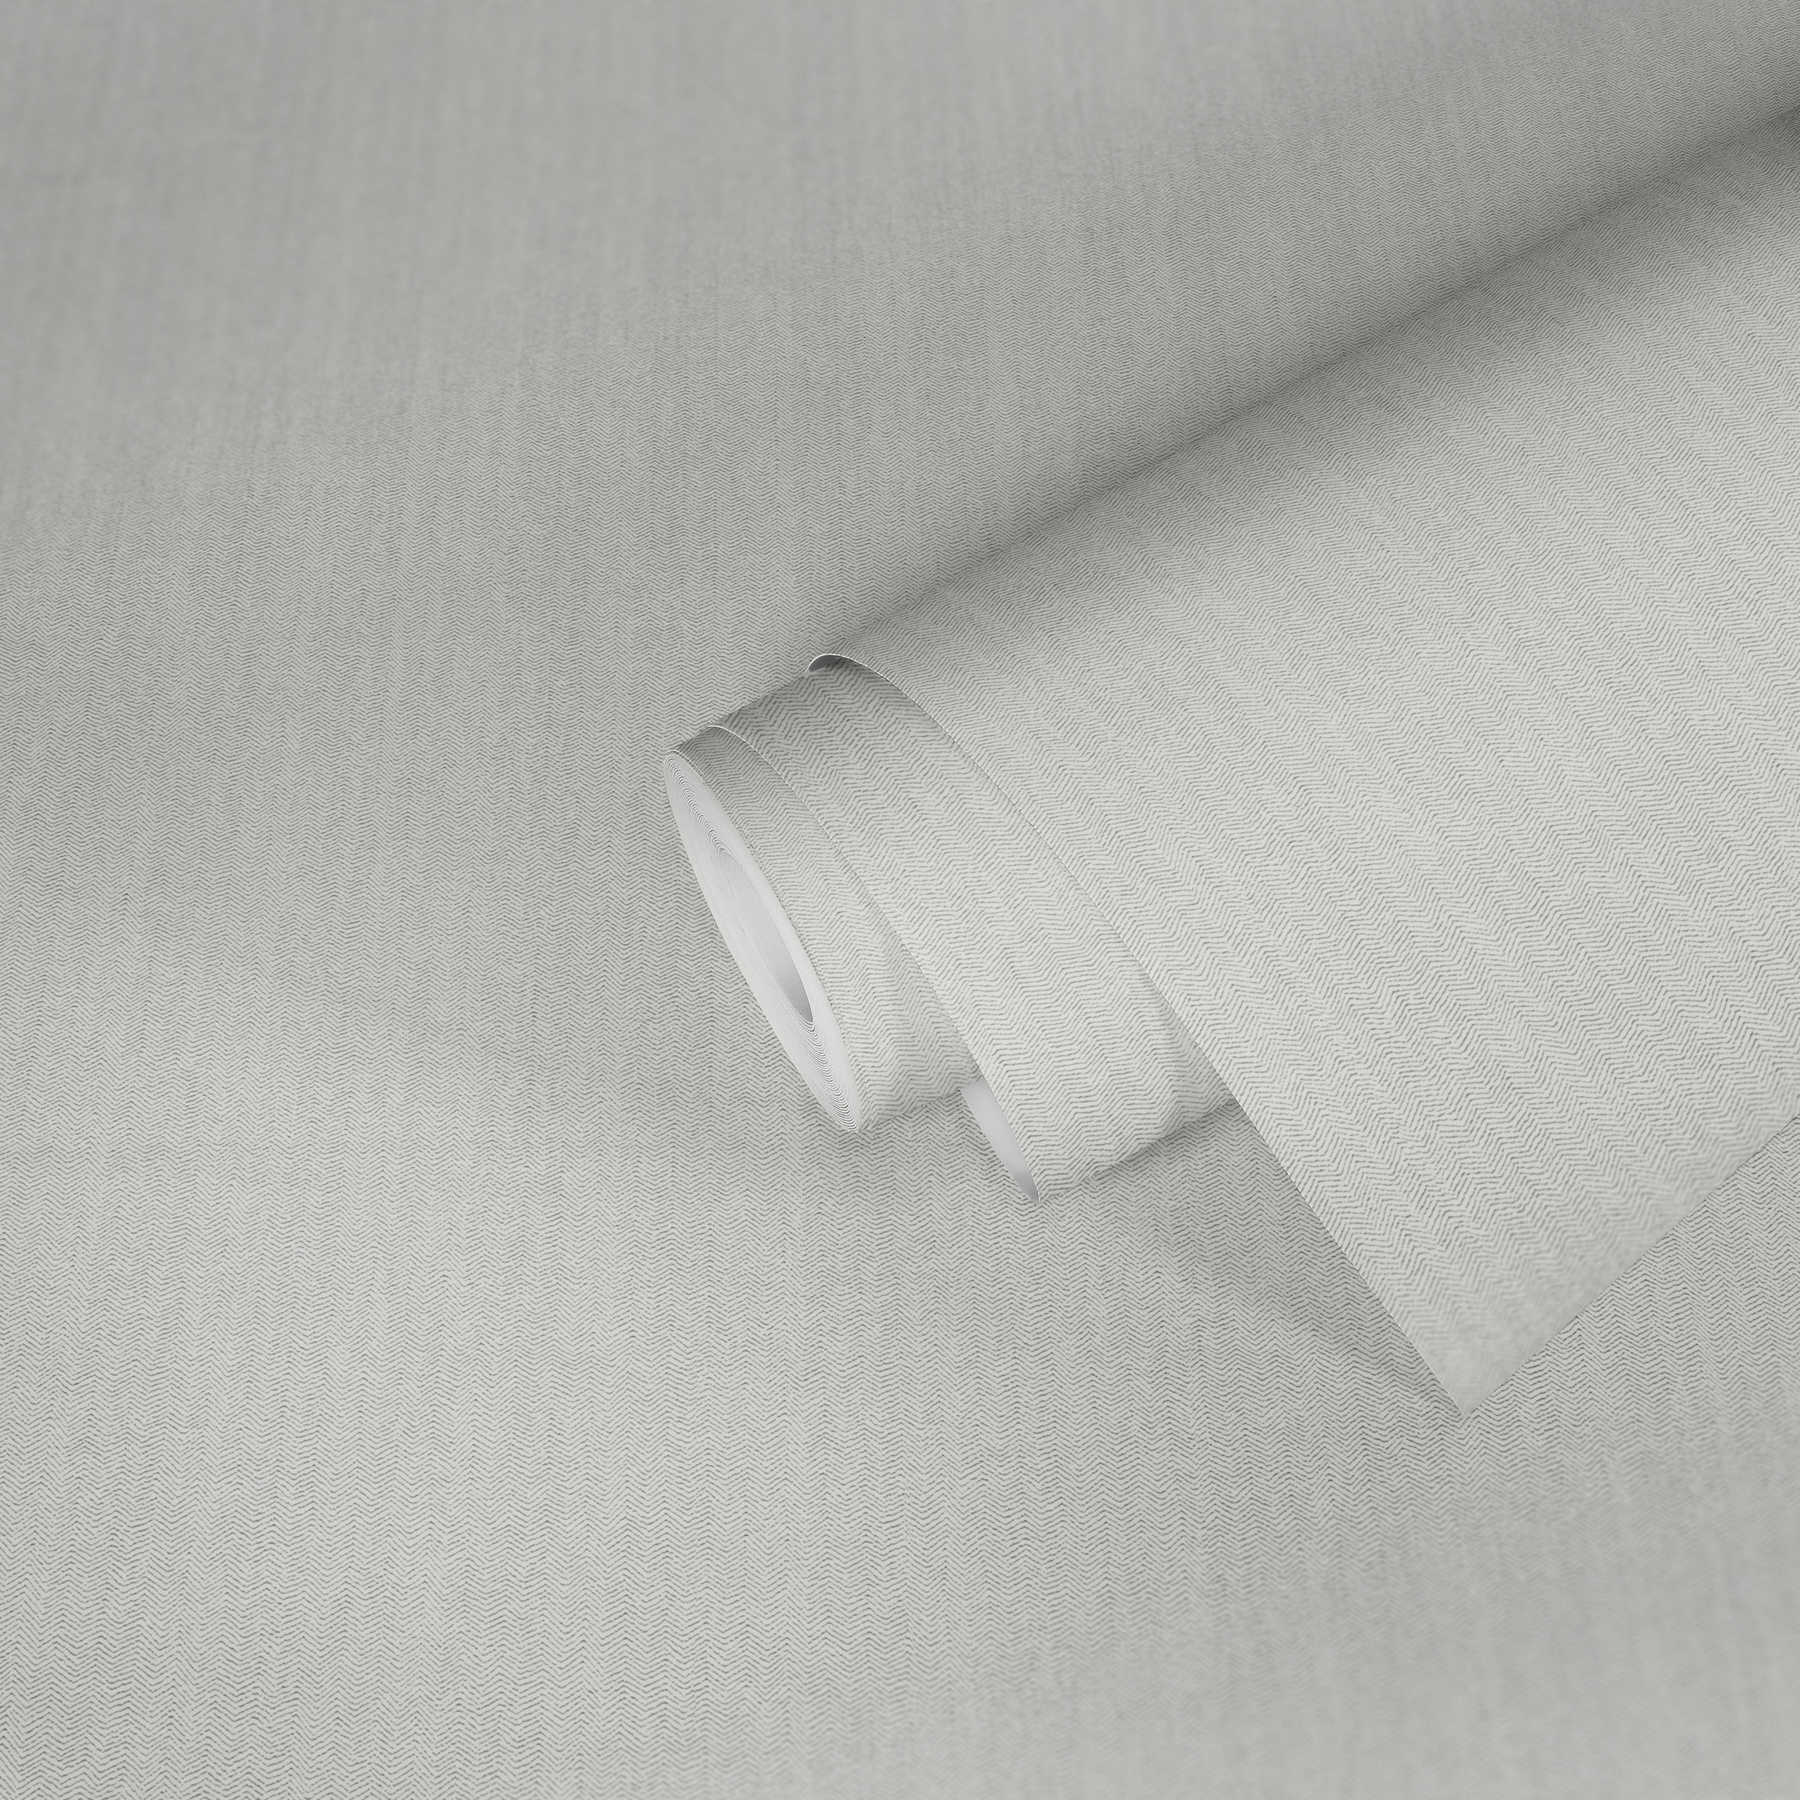             Papier peint uni structure à chevrons avec effet textile
        